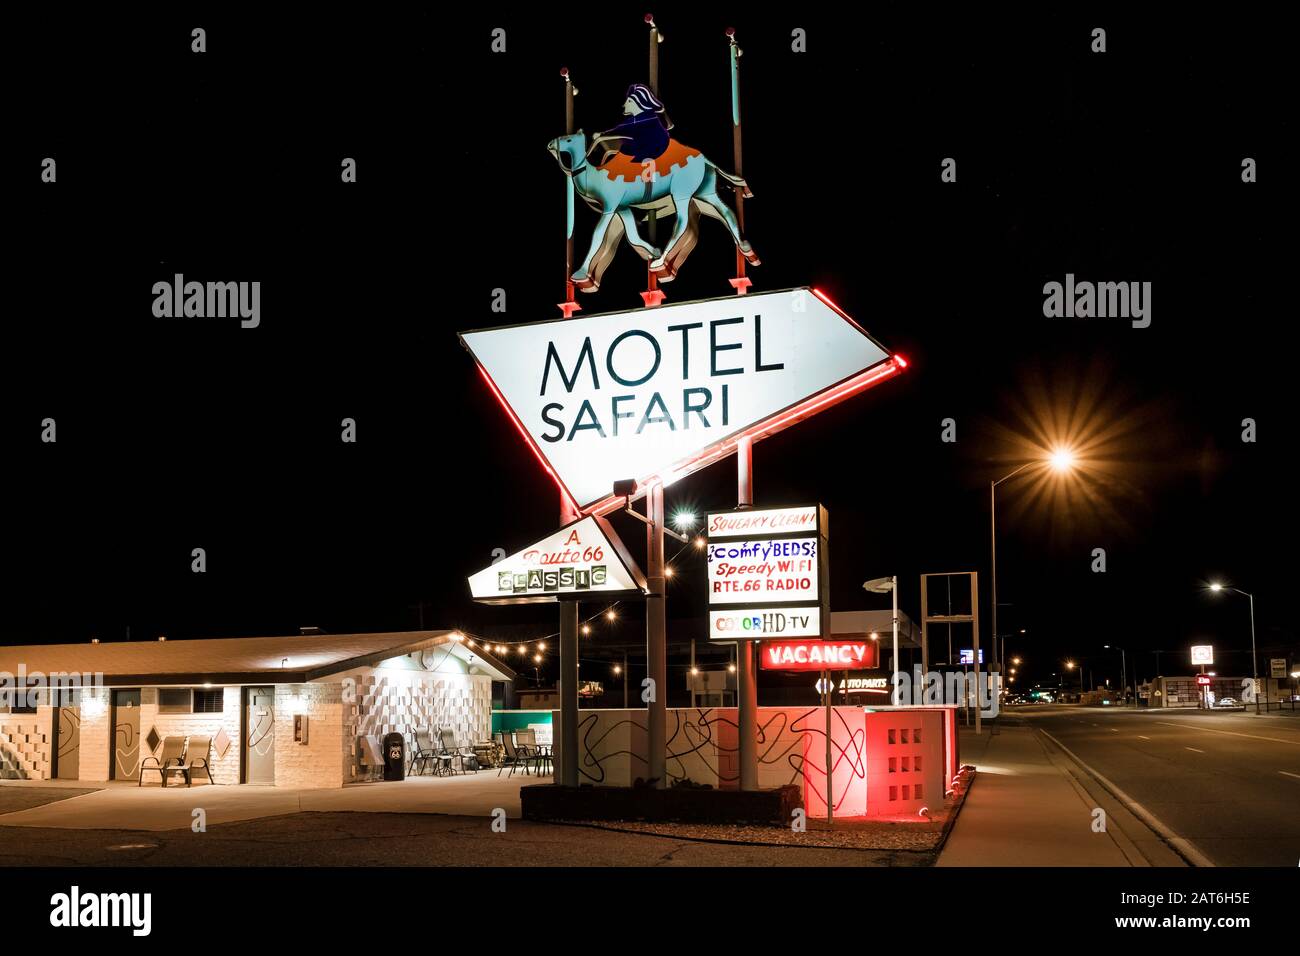 Classic Motel Safari, restaurato e mantenuto con cura, lungo la storica Route 66 a Tucumcari, New Mexico, USA [Nessun rilascio di proprietà; disponibile per l'editing Foto Stock